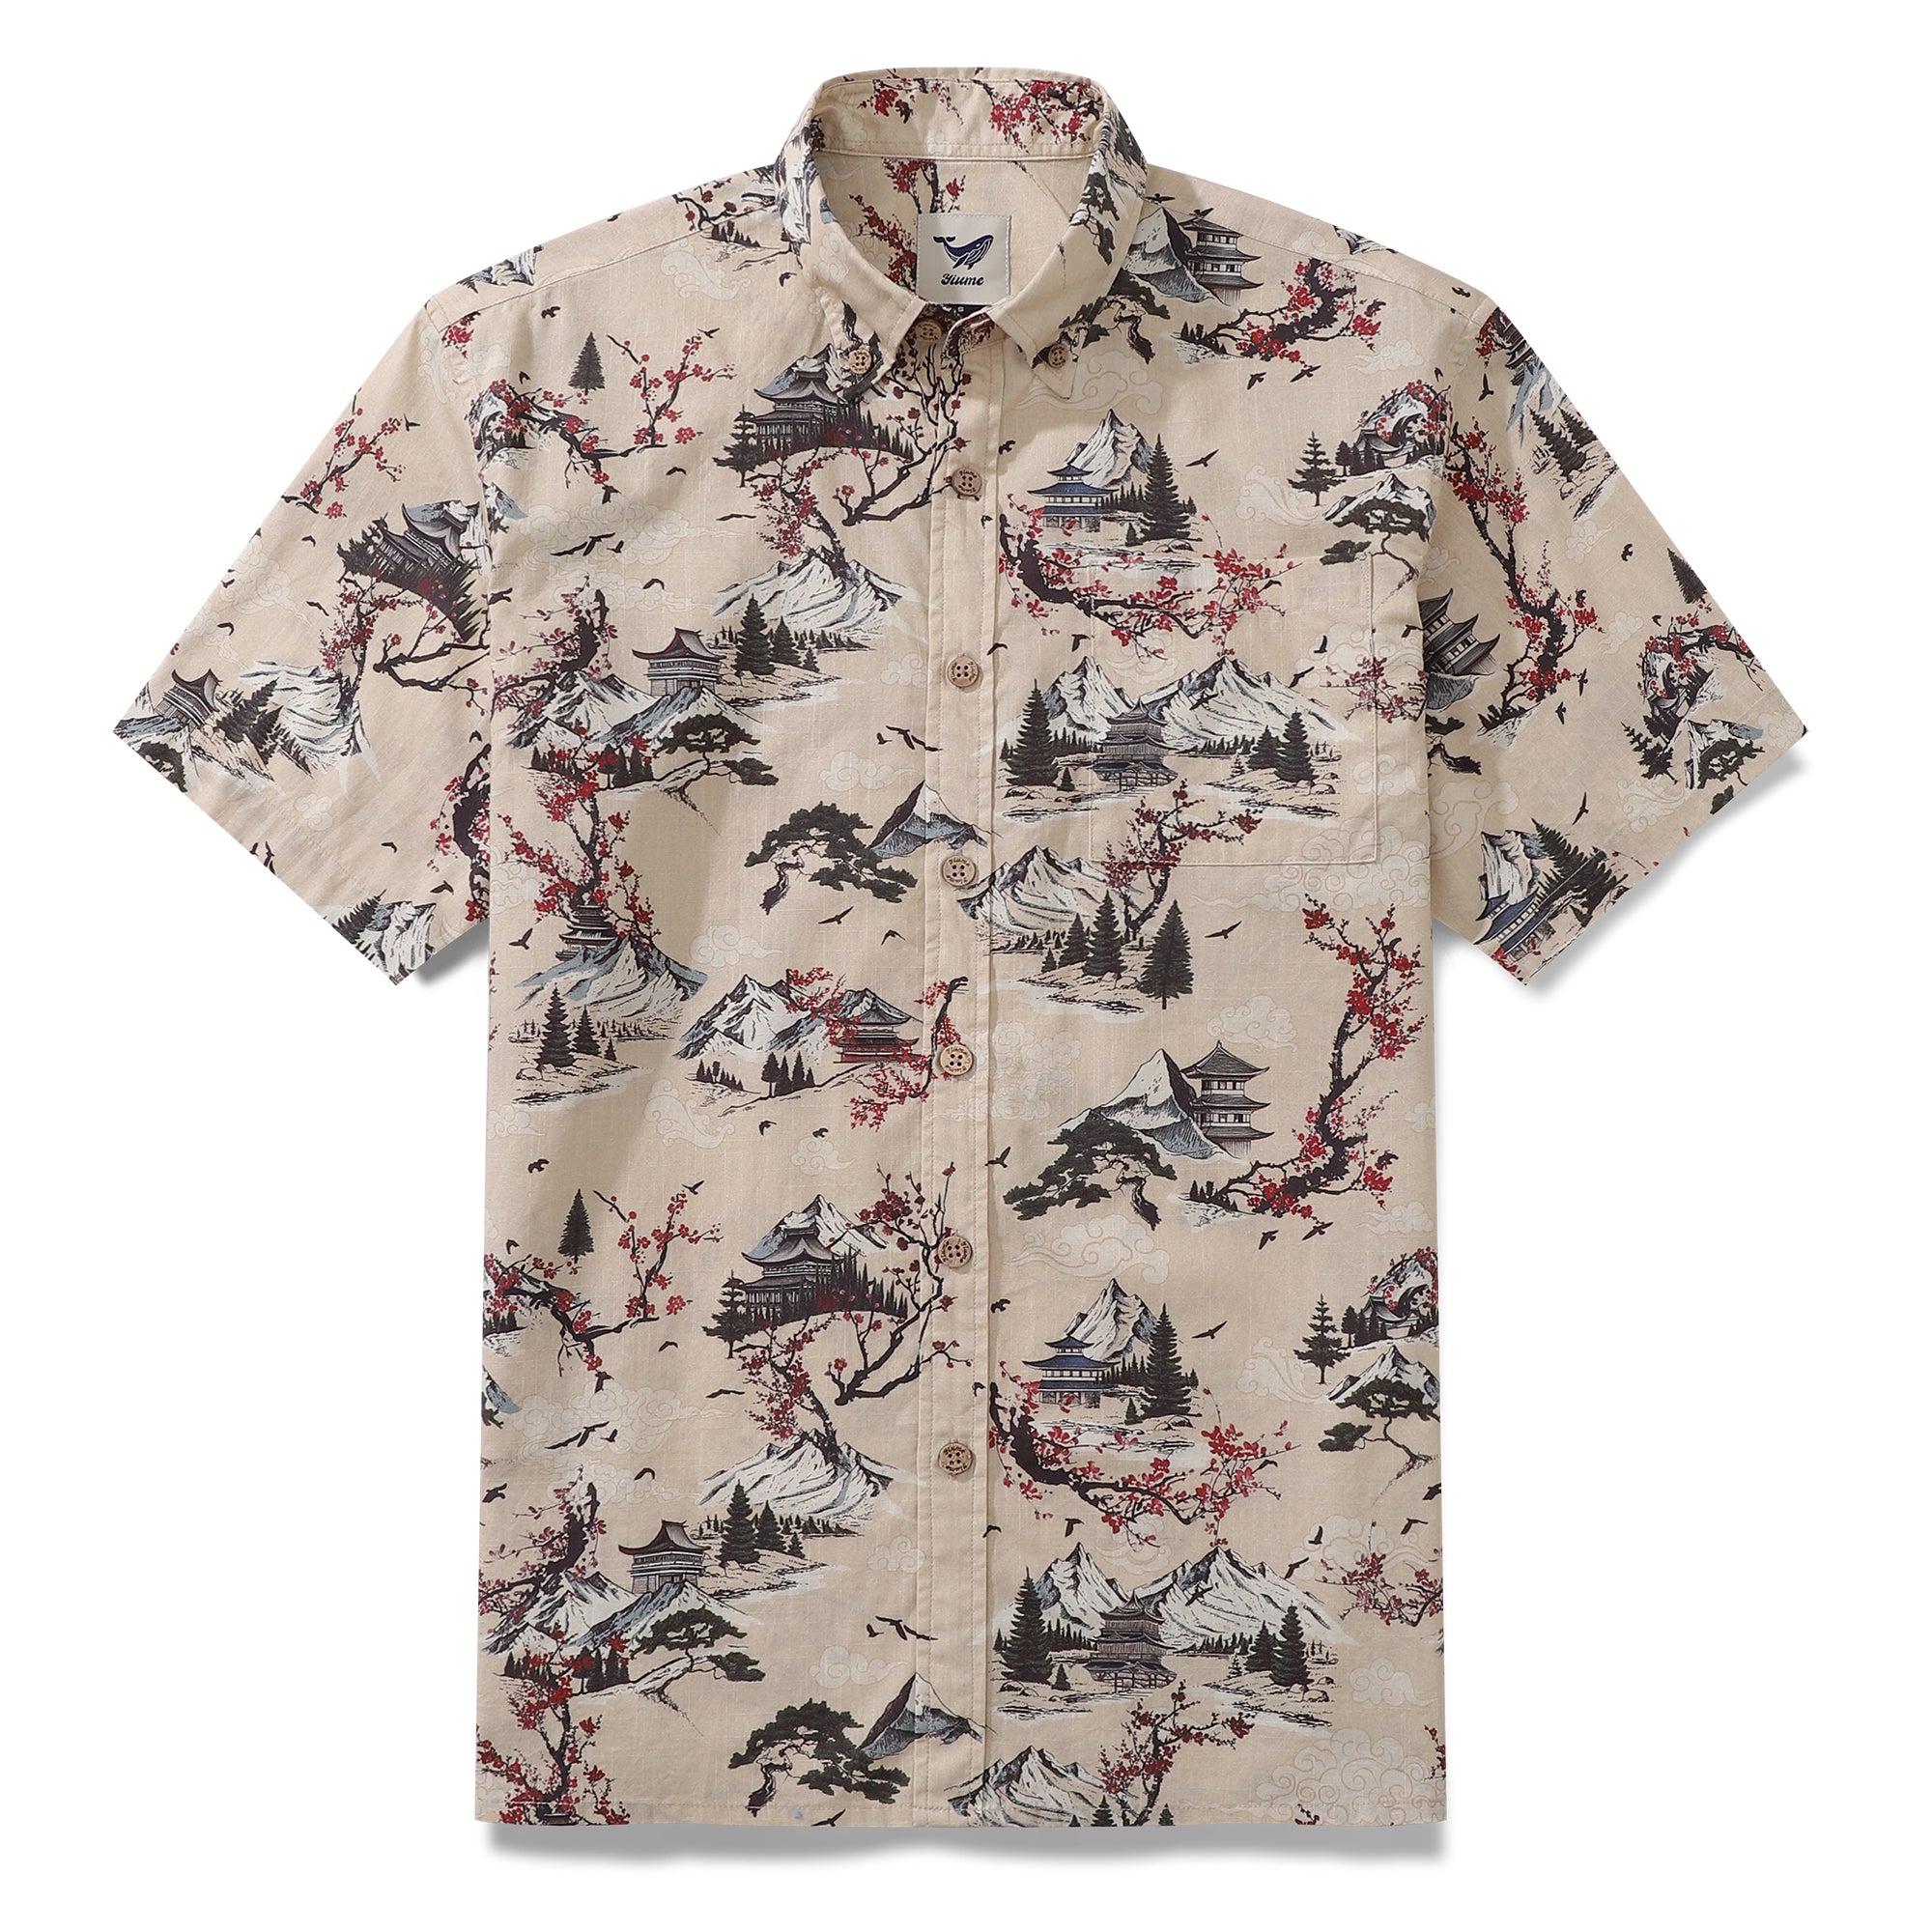 Men's Hawaiian Shirt Plum Blossom Print Cotton Button-down Short Sleeve Aloha Shirt